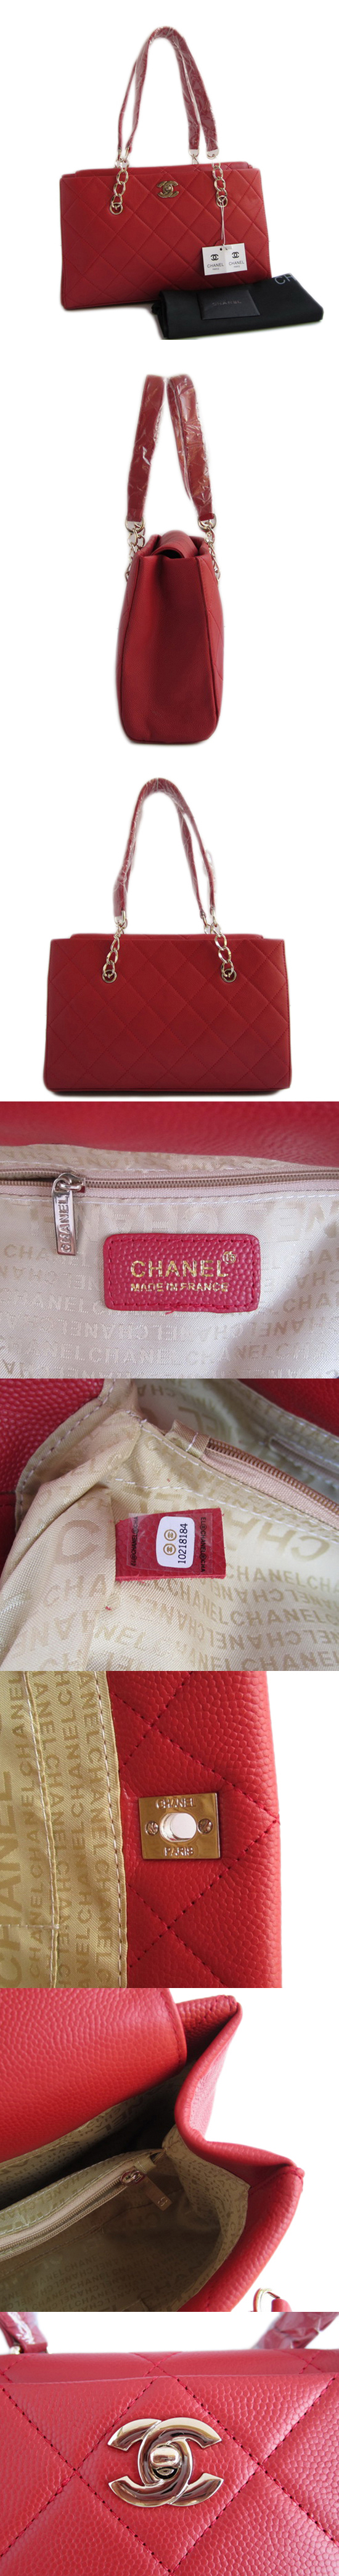 ブランド通販CHANEL-シャネル-bag-4708-red激安屋-ブランドコピー